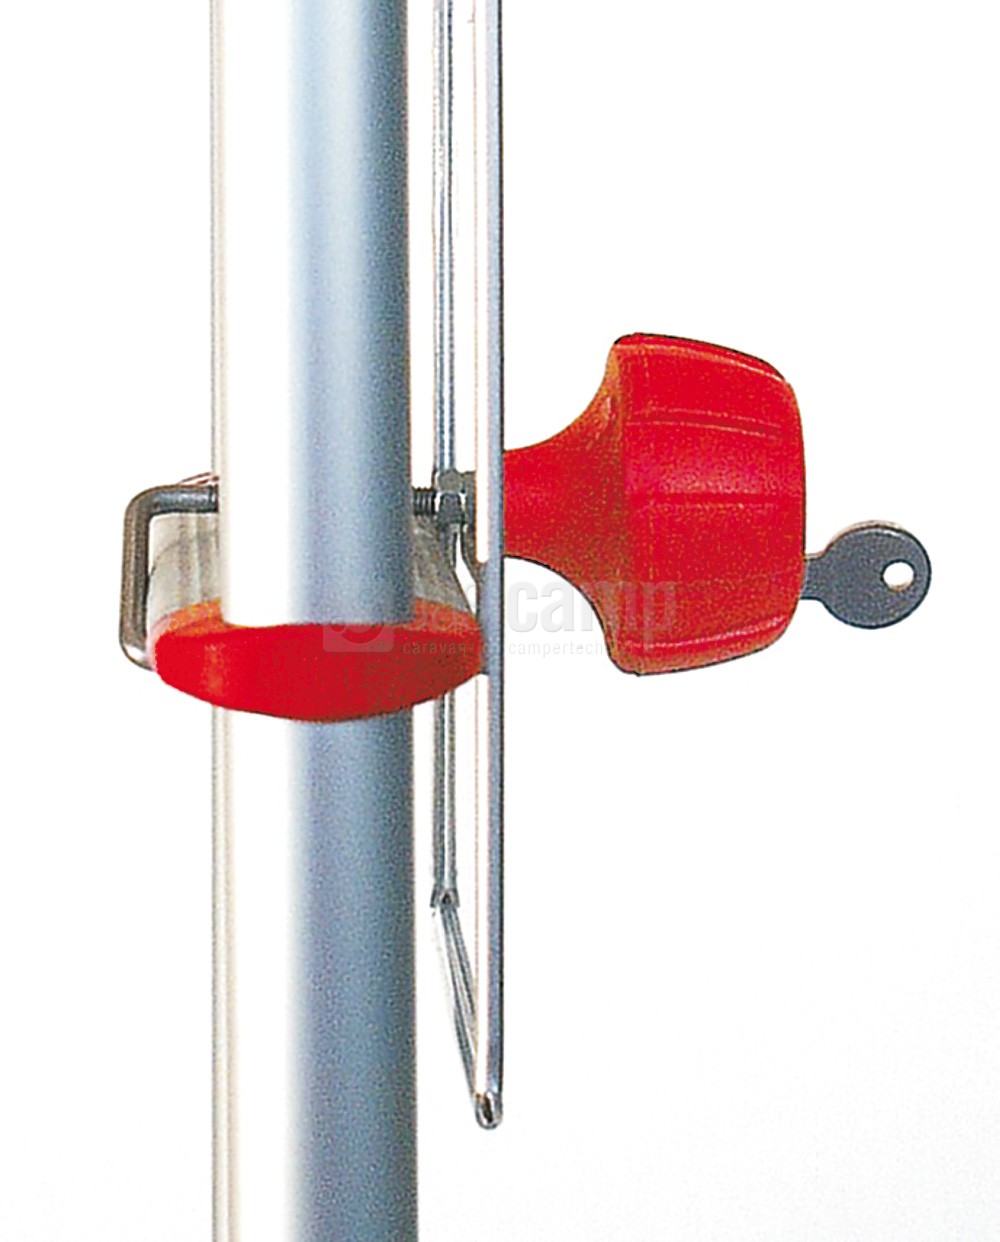 Fiamma Safe ladder, beveiliging tegen opklimmen. nr.98656-480 van 89.50 voor 80.55